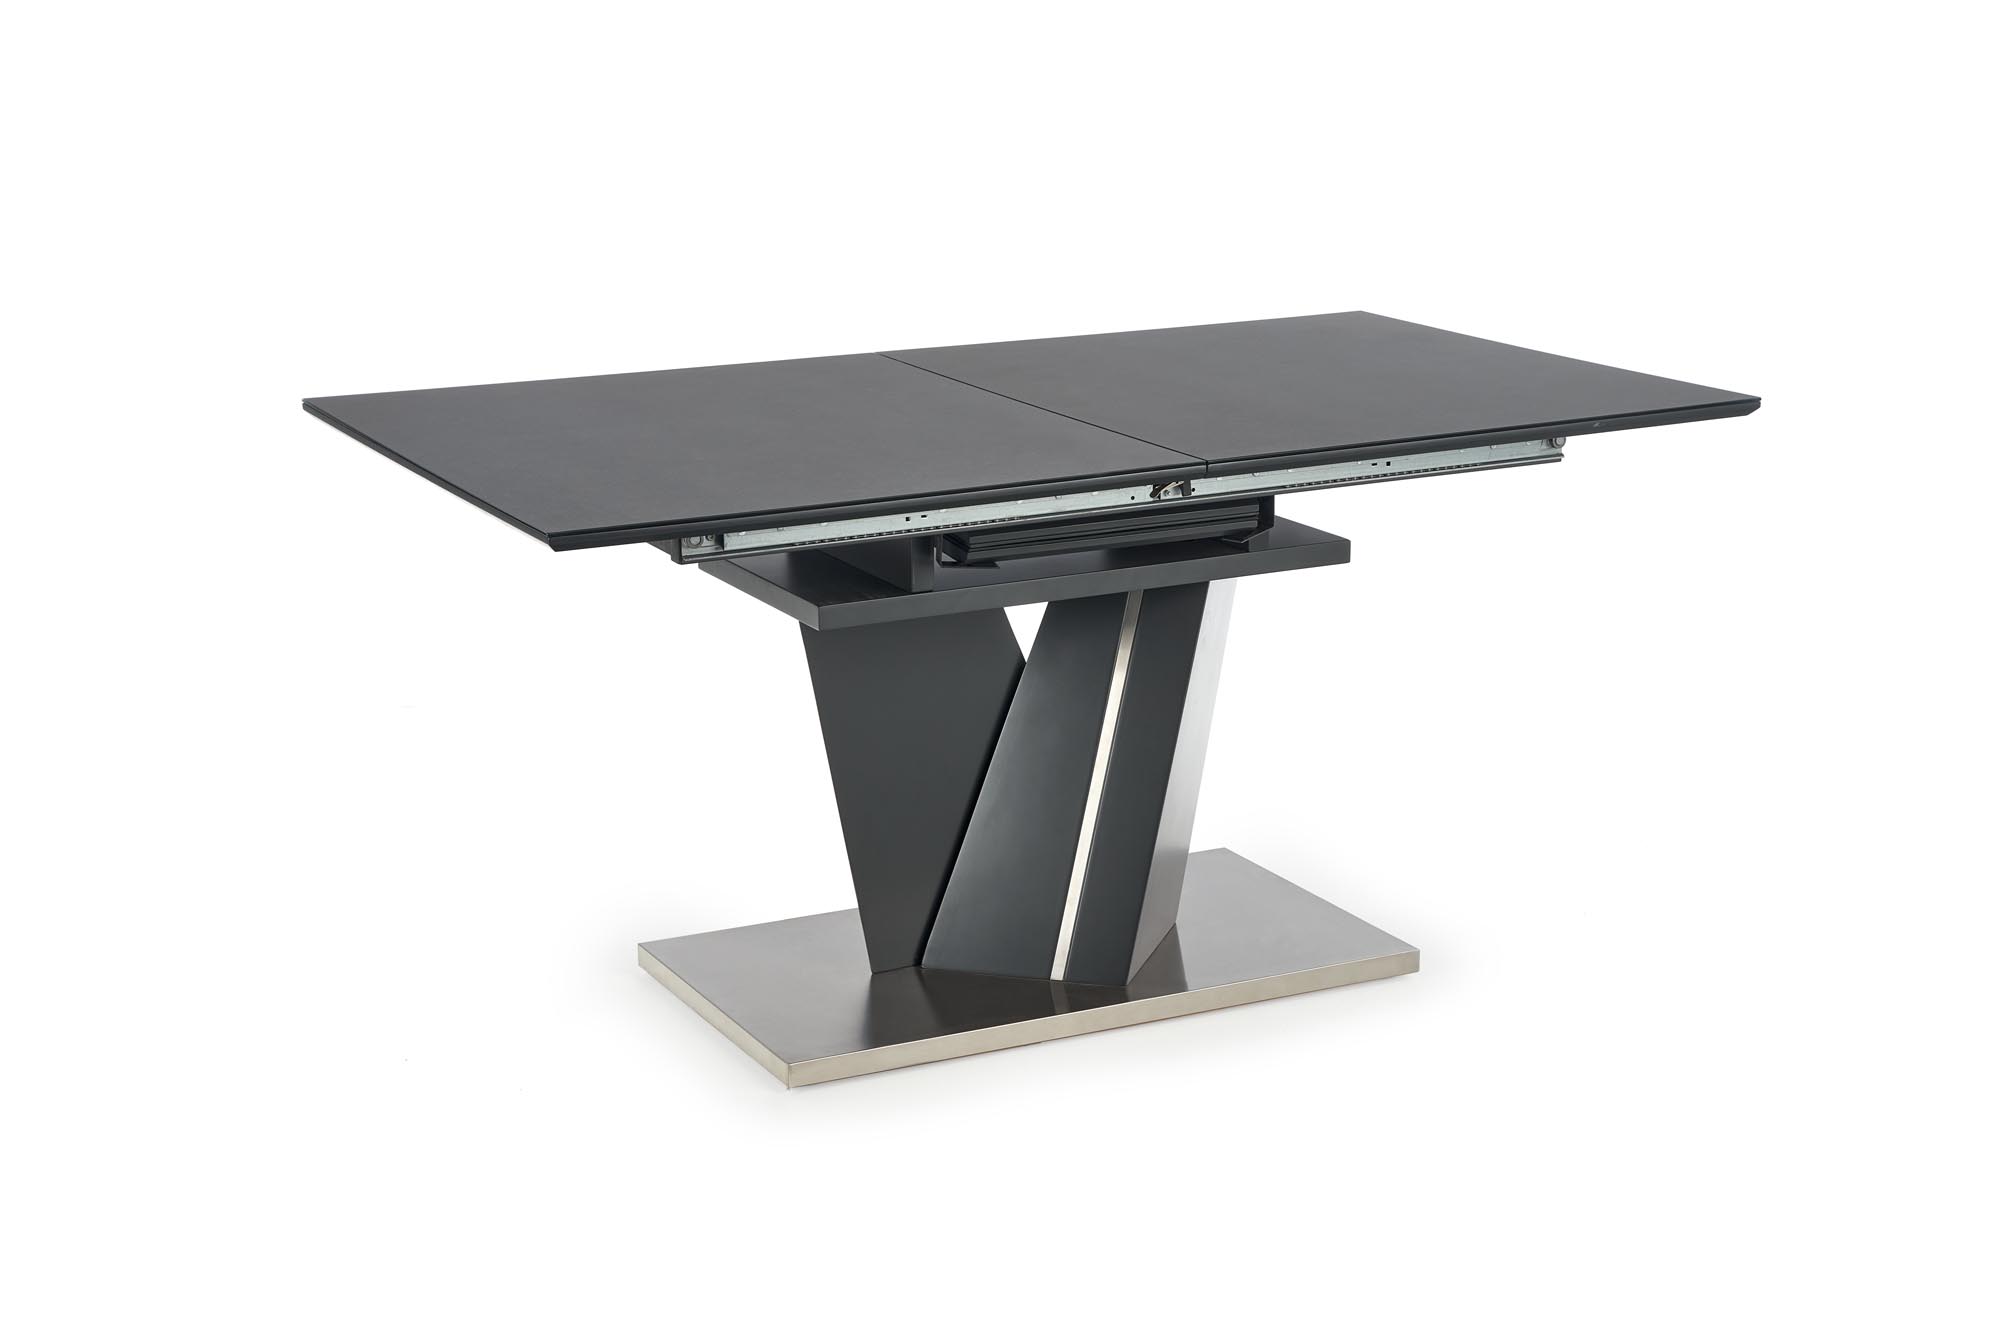 SALVADOR összecsukható asztal, asztallap - hamu sötét, lábak - hamu sötét salvador stůl rozkládací Deska - tmavý popel, nohy - tmavý popel